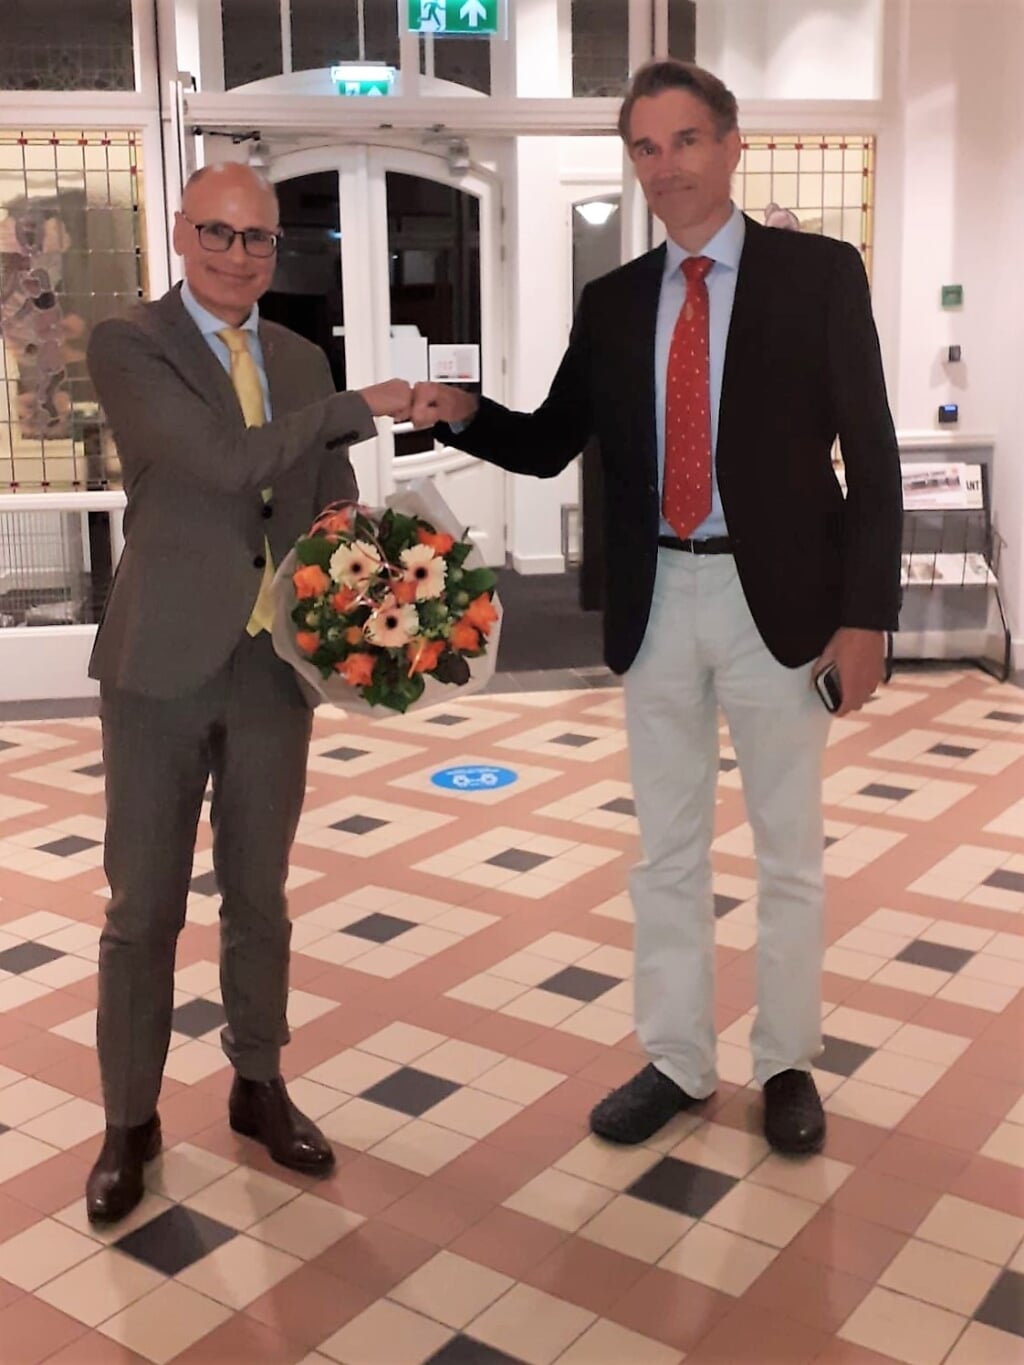 Als felicitatie ontving burgemeester Jaensch bloemen van raad. | Foto Inge Oosterhuis